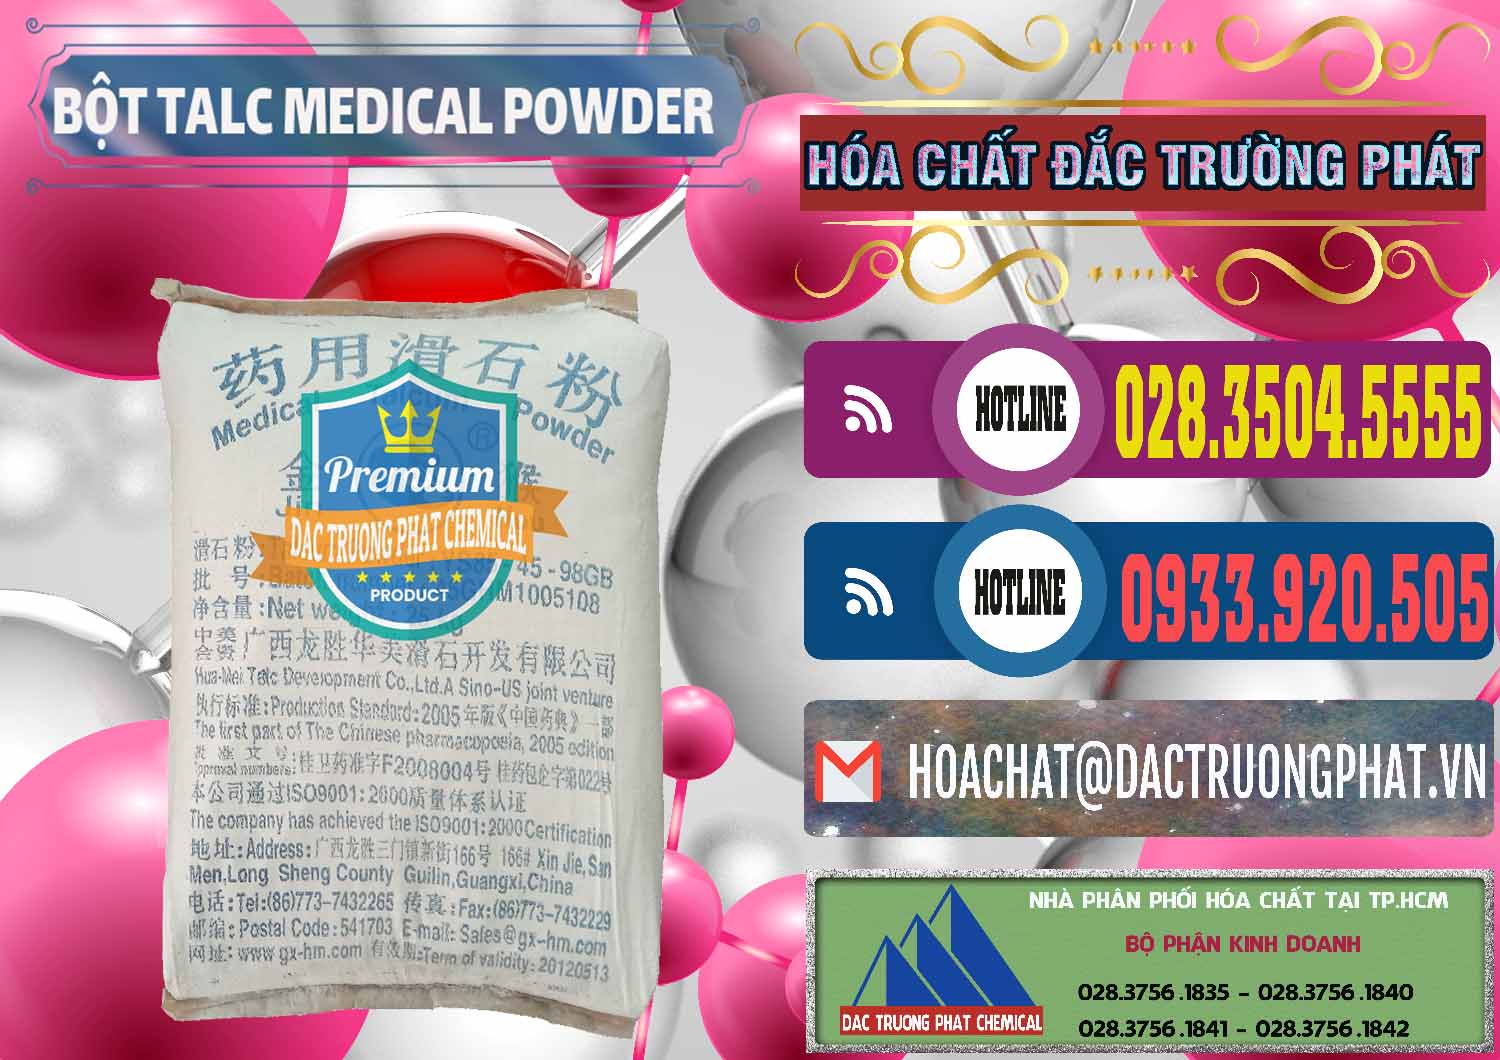 Cty cung cấp và bán Bột Talc Medical Powder Trung Quốc China - 0036 - Cty bán _ phân phối hóa chất tại TP.HCM - muabanhoachat.com.vn